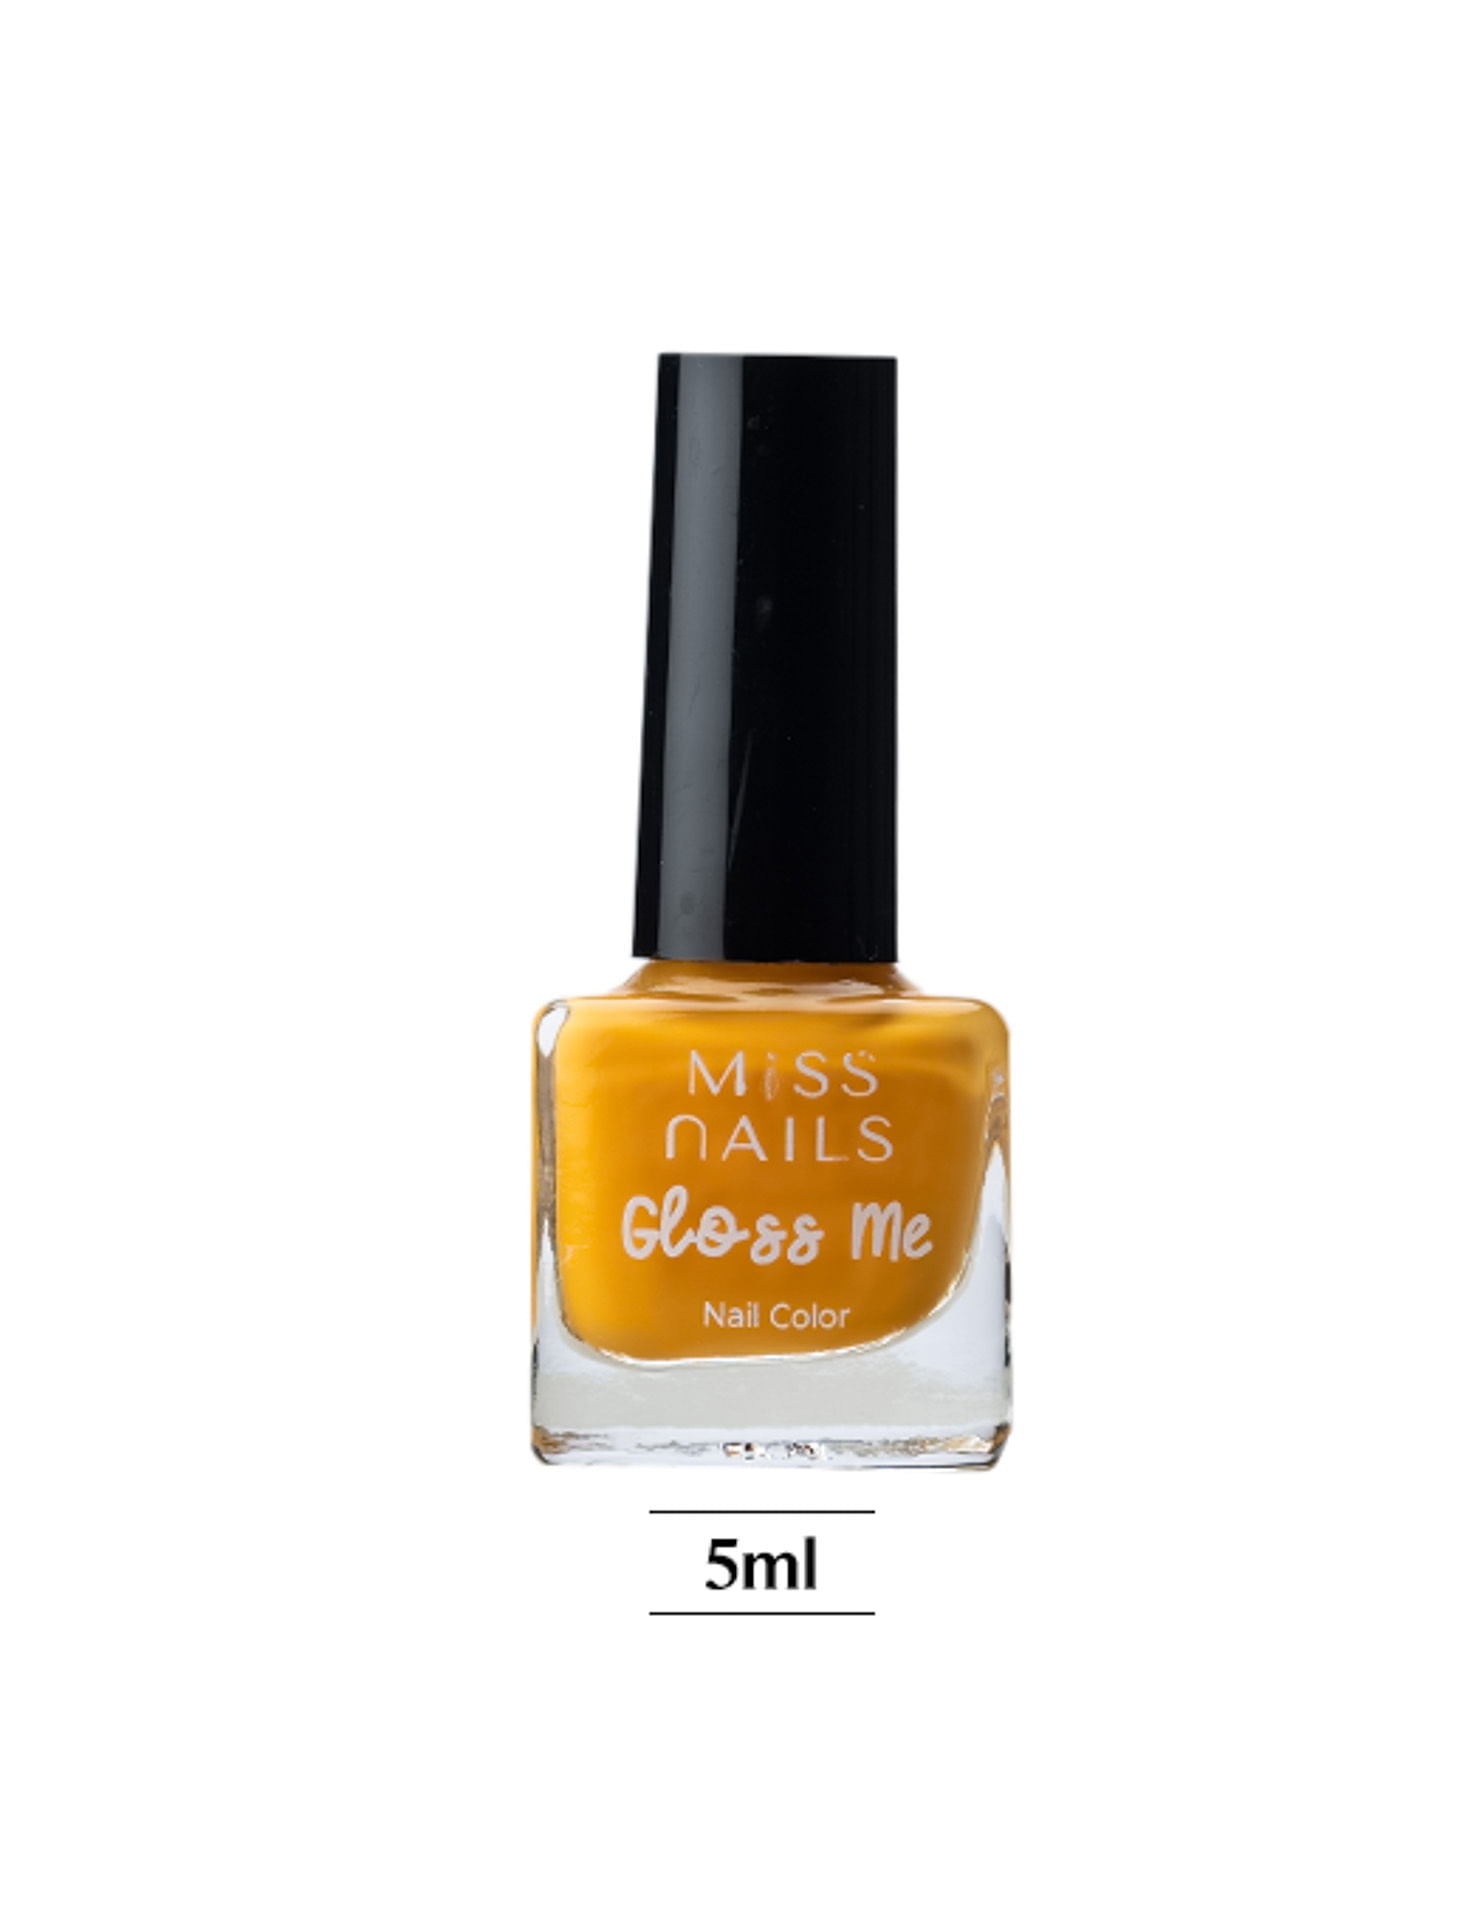 Review of Avon Gel Finish nail polish in Creme Brulee | Avon nails, Nail  polish, Nails